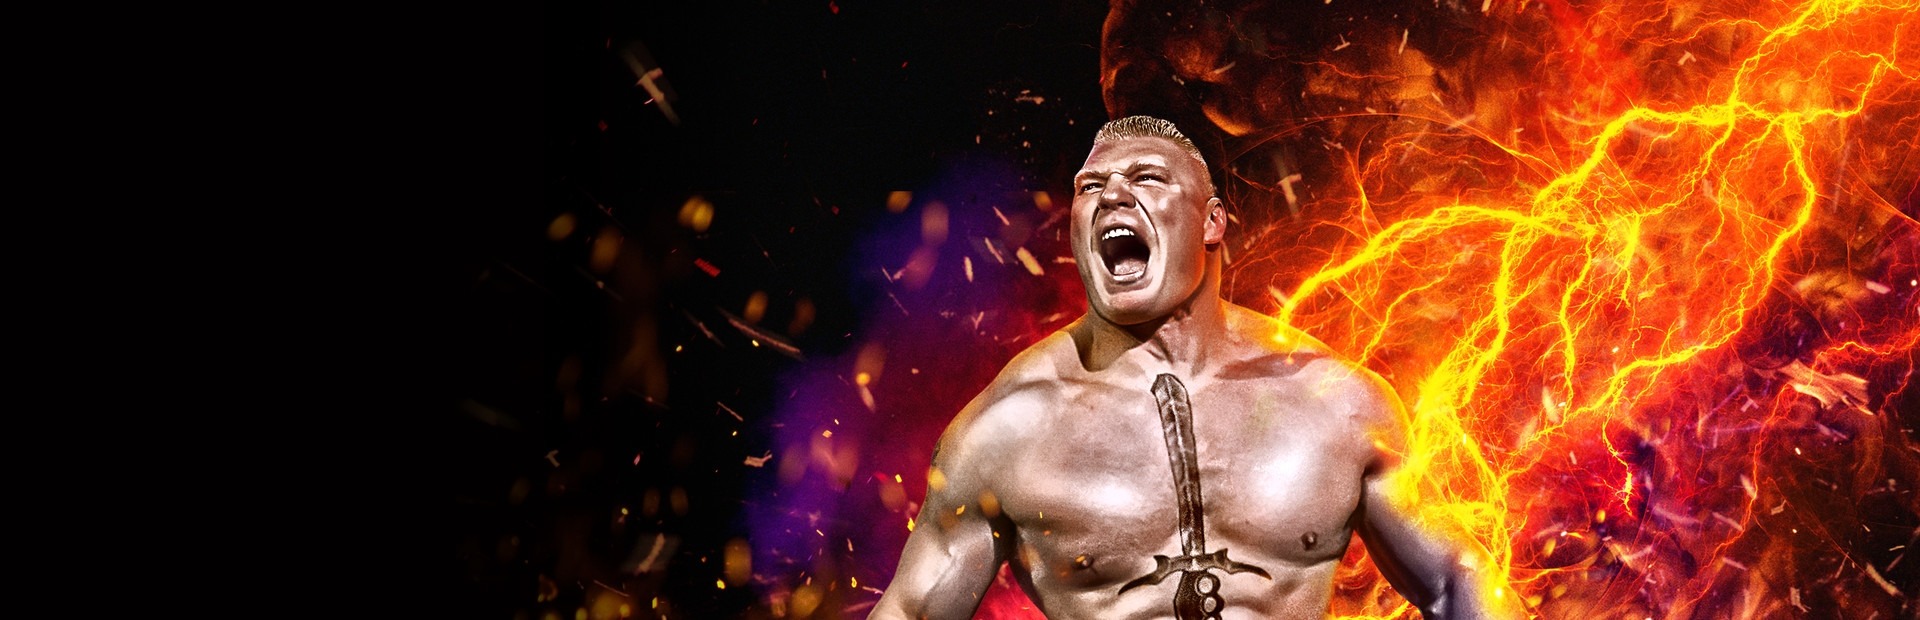 Banner WWE 2K17 - NXT Enhancement Pack